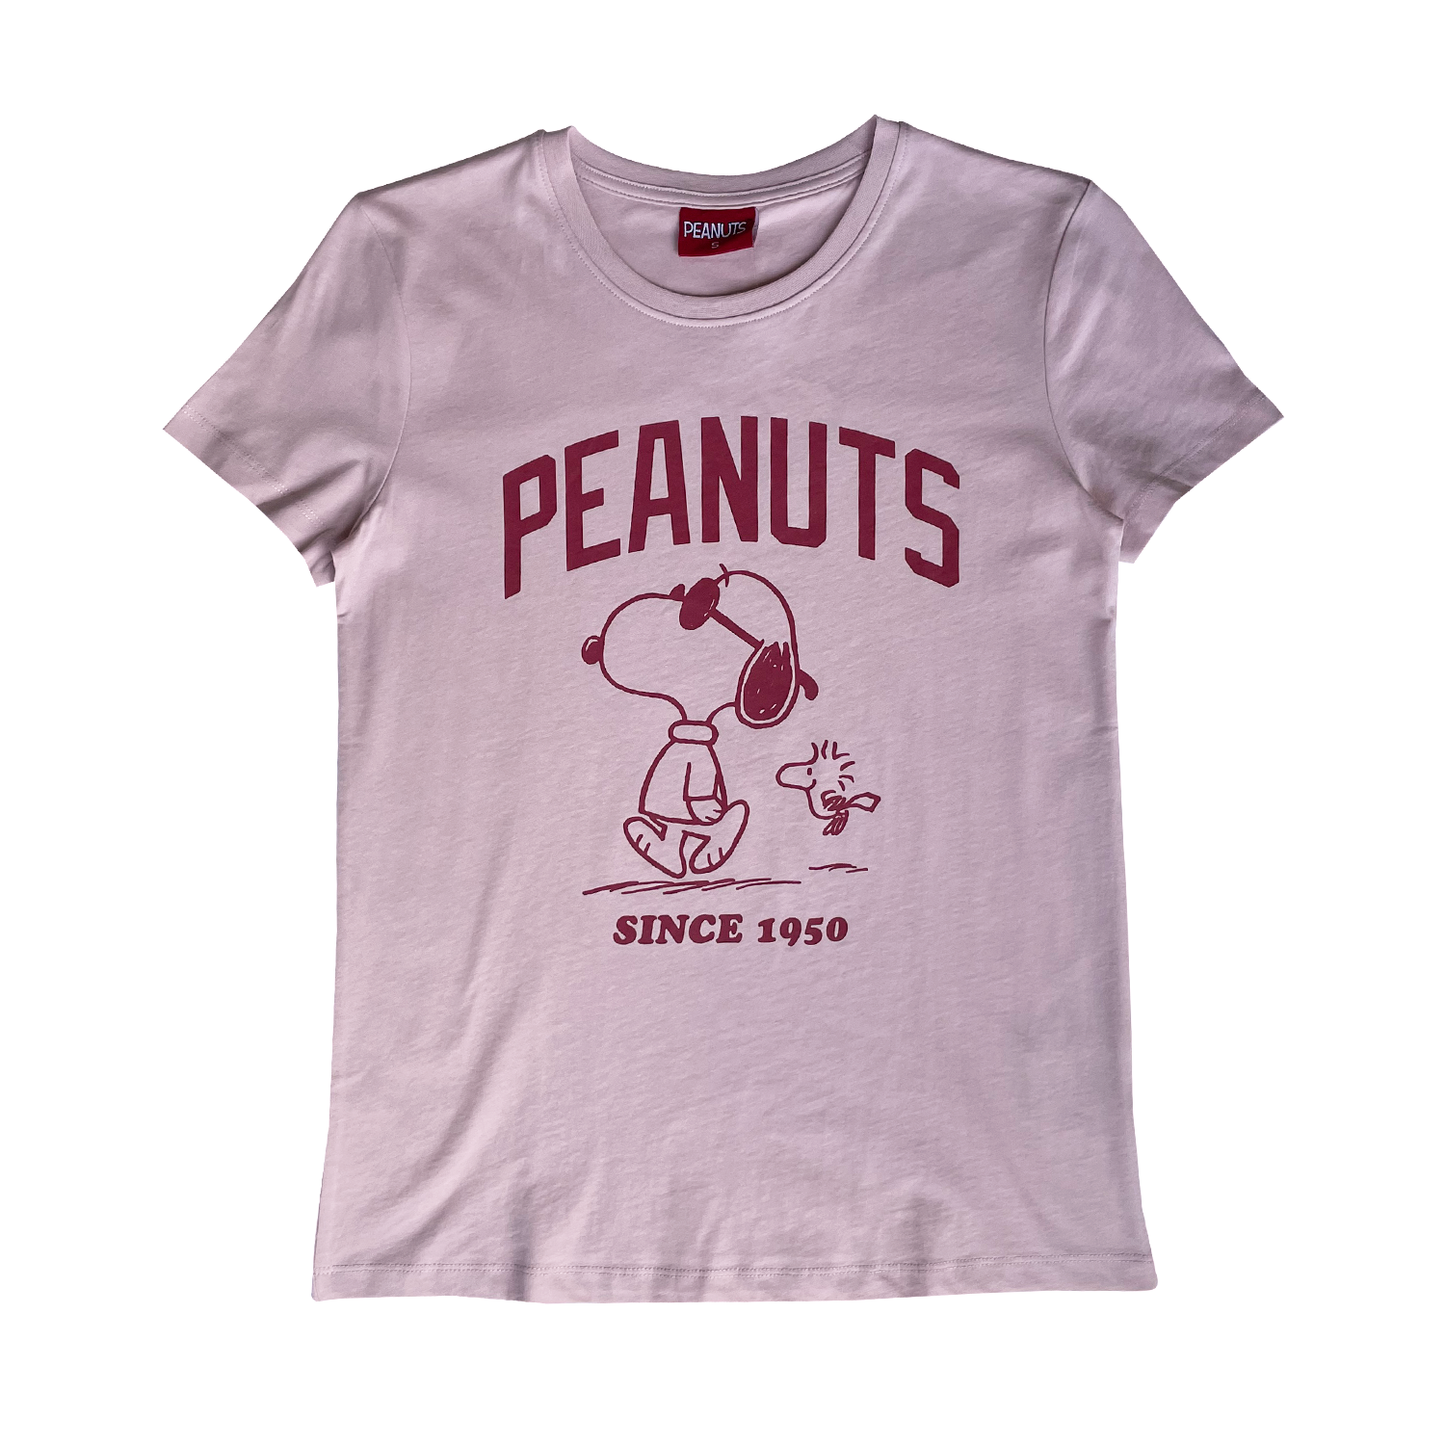 Peanuts - Since 1950 T-Shirt